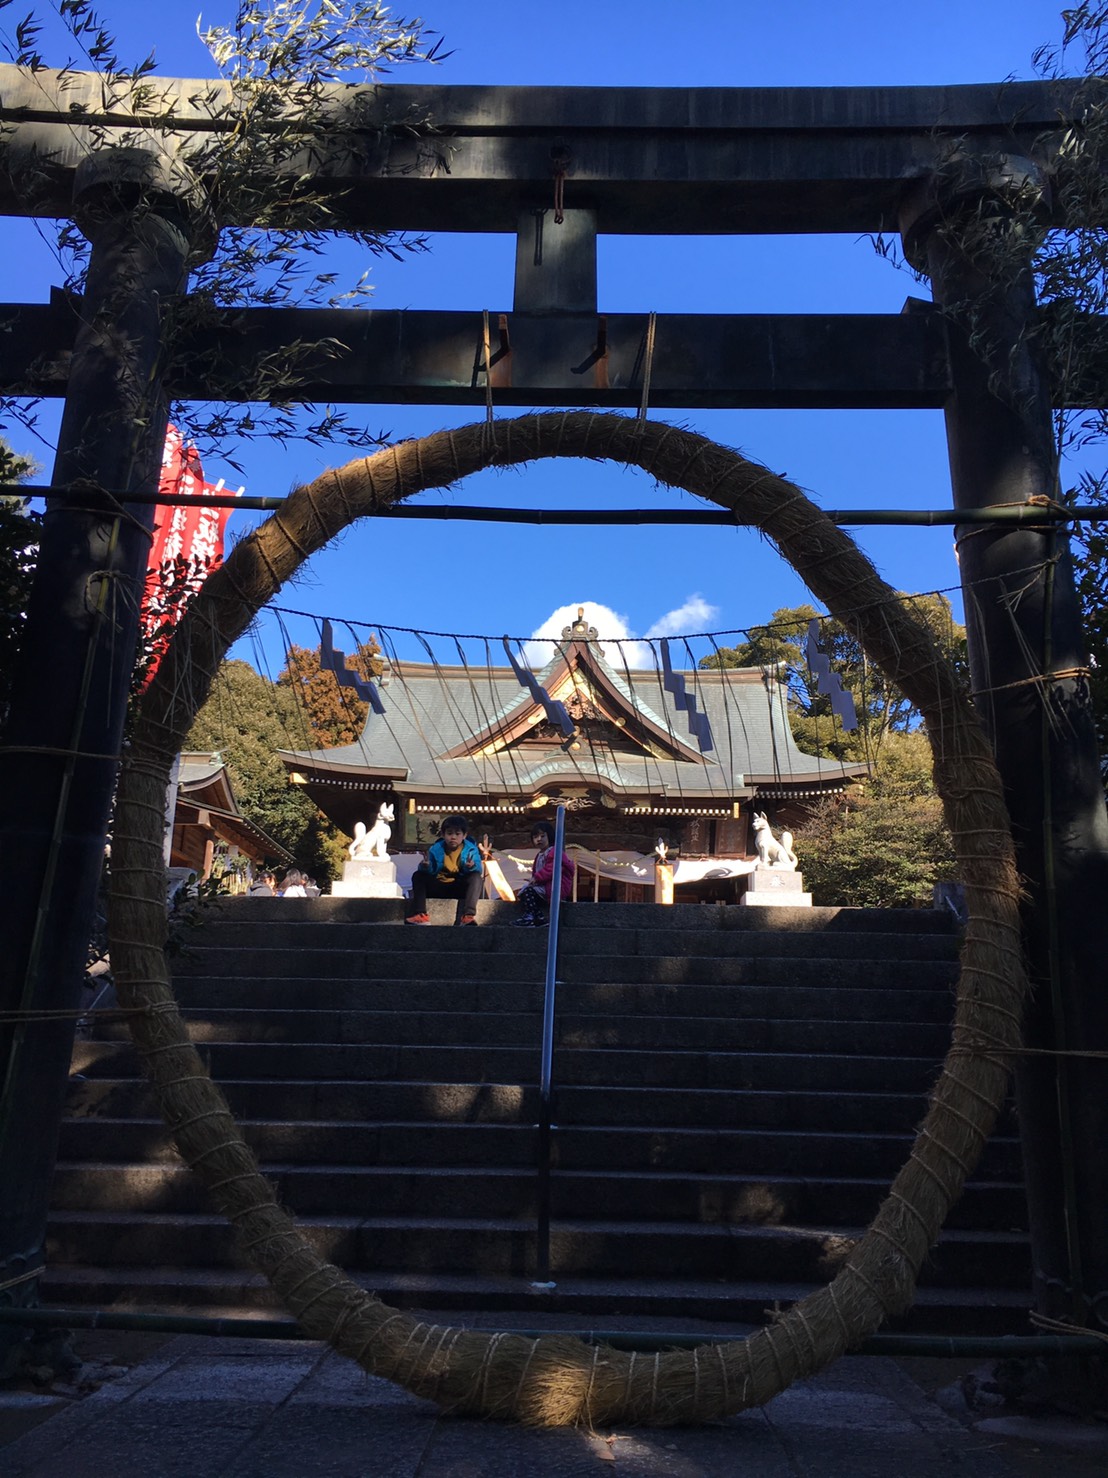 一瓶塚稲荷神社のしめ縄の先に子供がいる写真